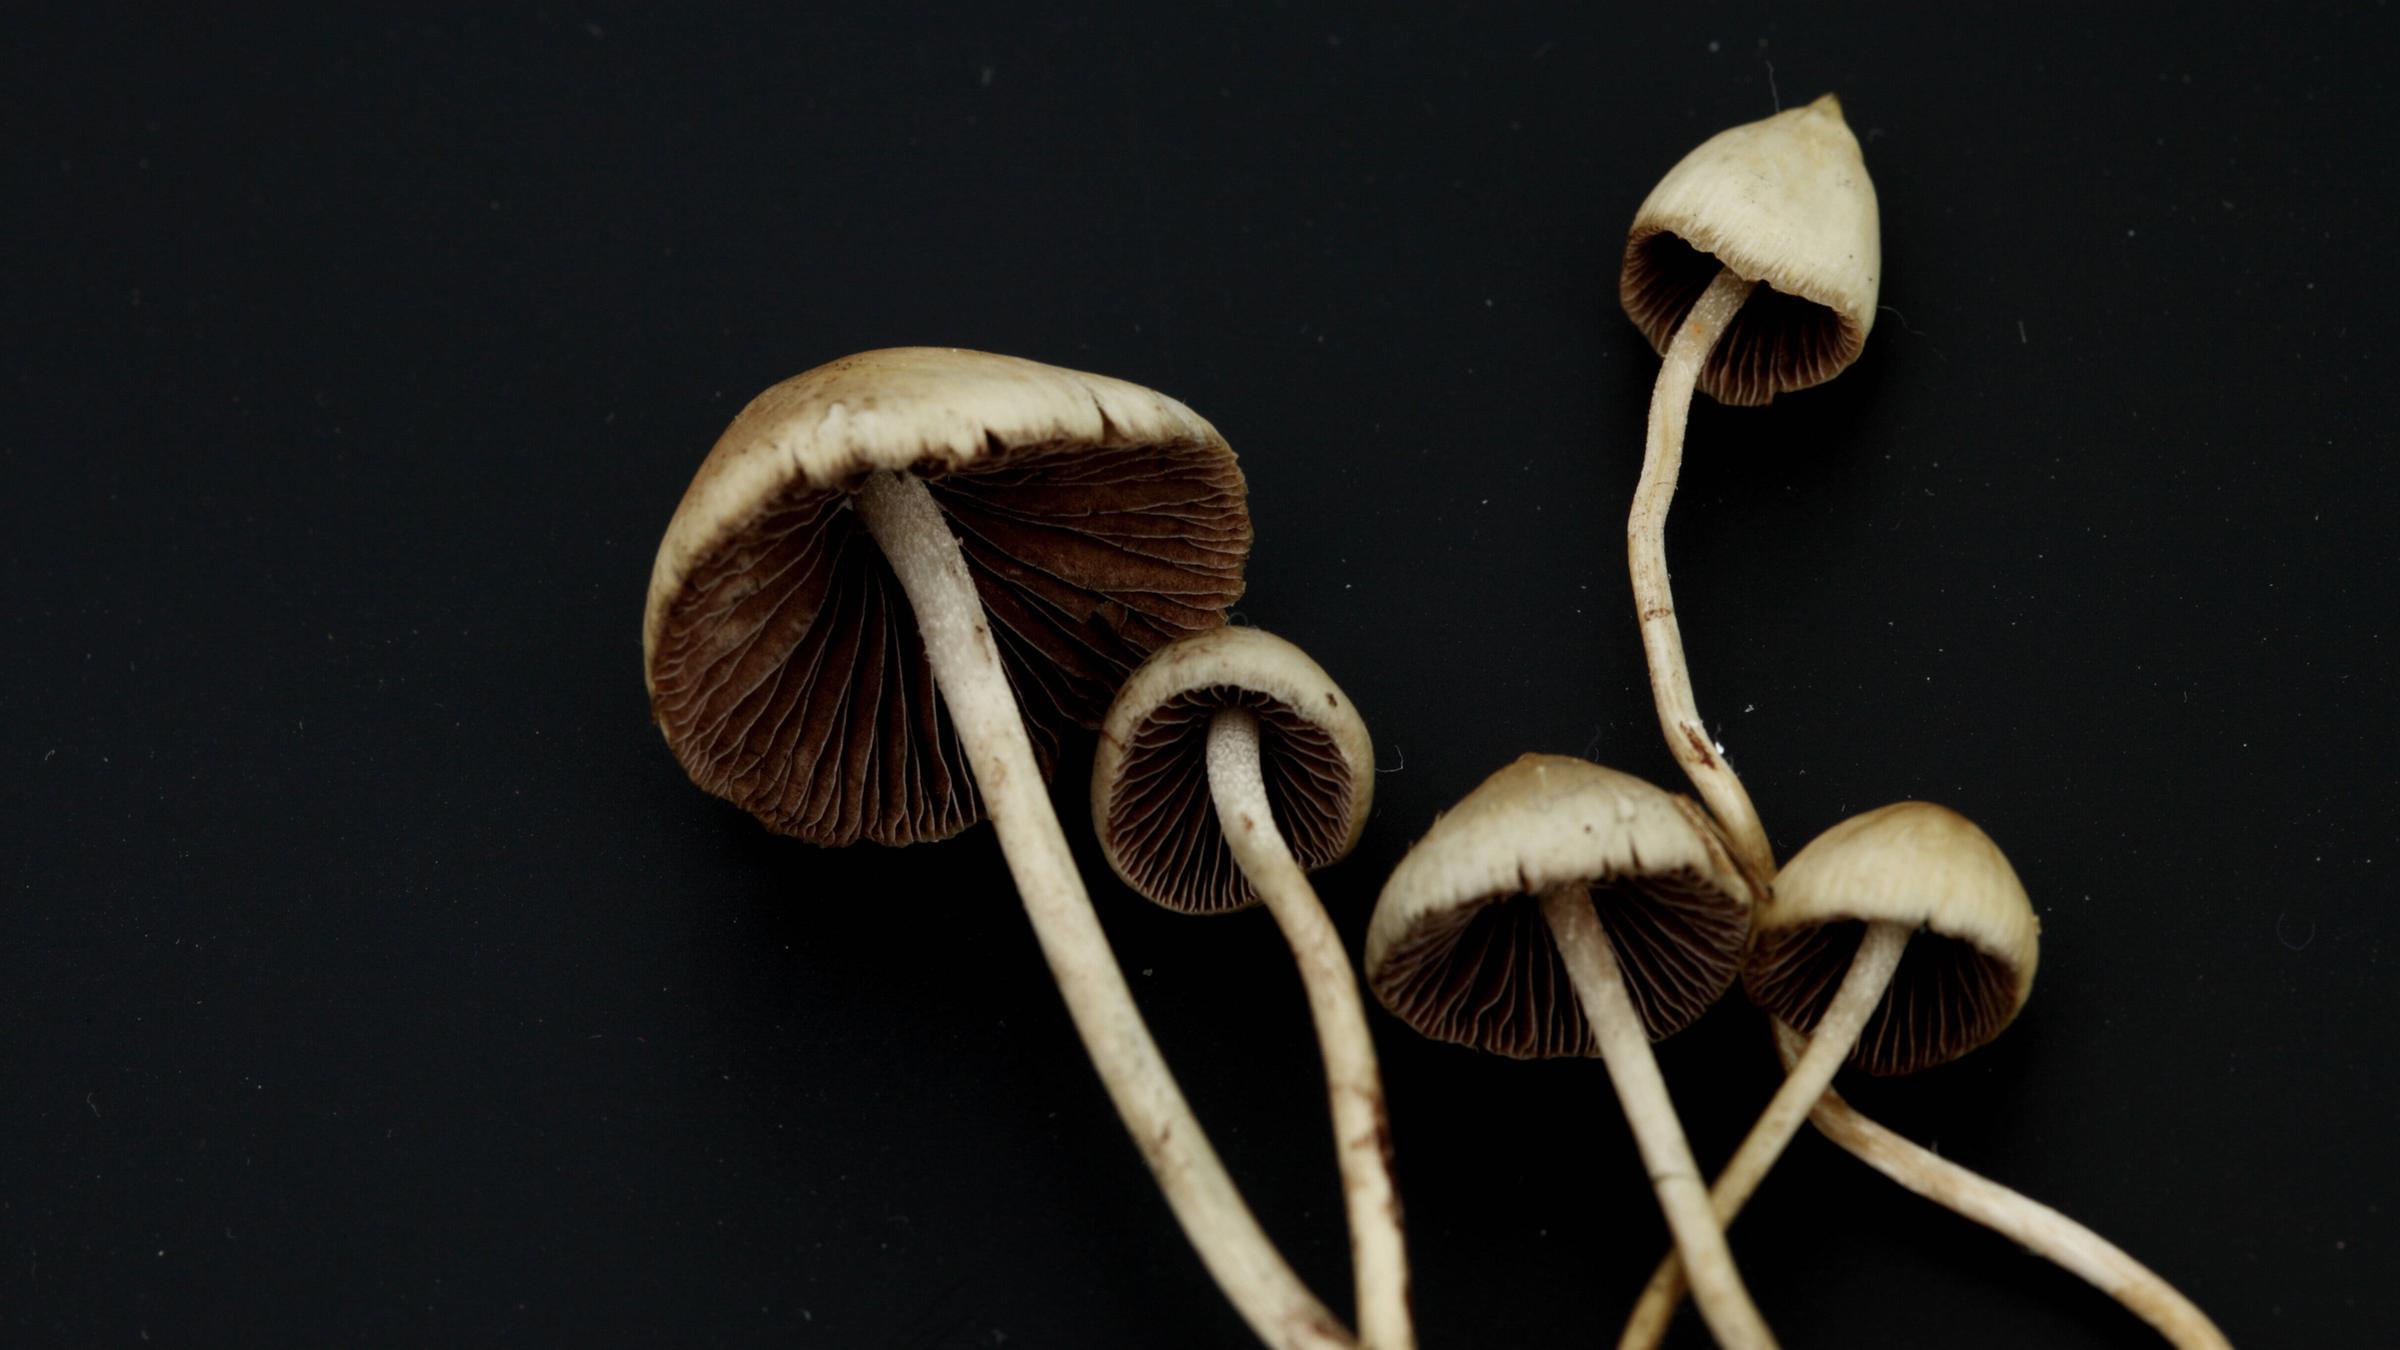 Psilocybe Semilanceata, besser begannt als sogenannte Magic Mushrooms in einer Makro-Aufnahme.
